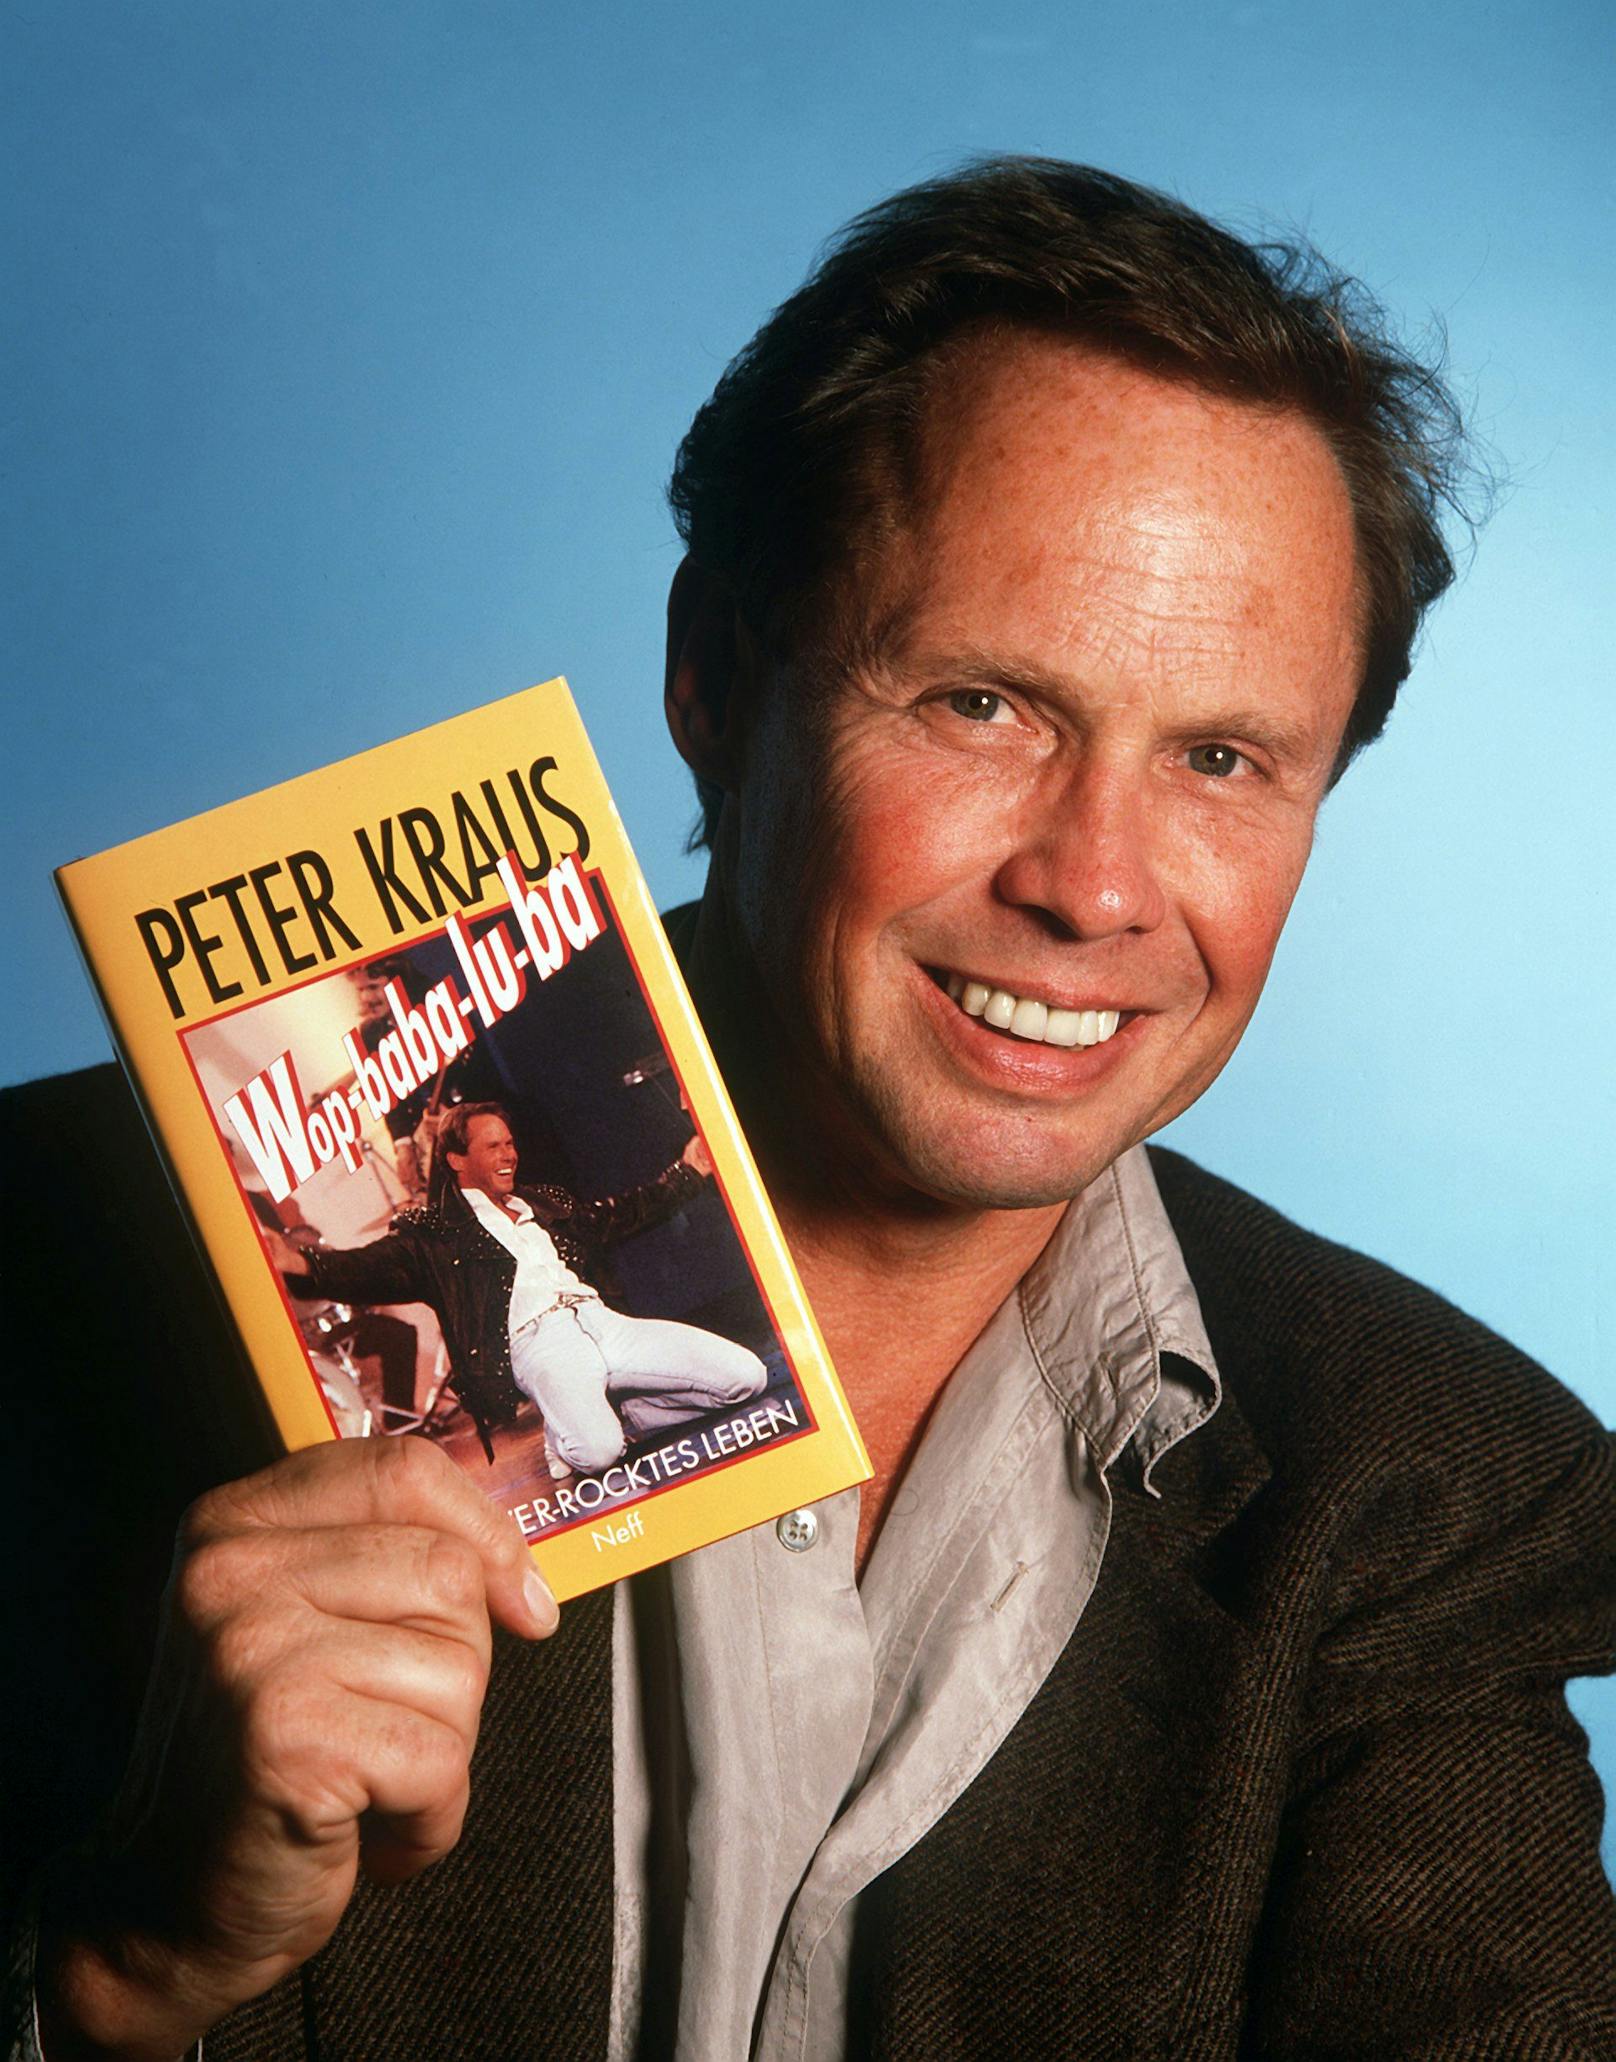 Peter Kraus stellte im Oktober 1990 auf der Frankfurter Buchmesse sein Buch "Wop-baba-lu-ba - Mein verrocktes Leben" vor.